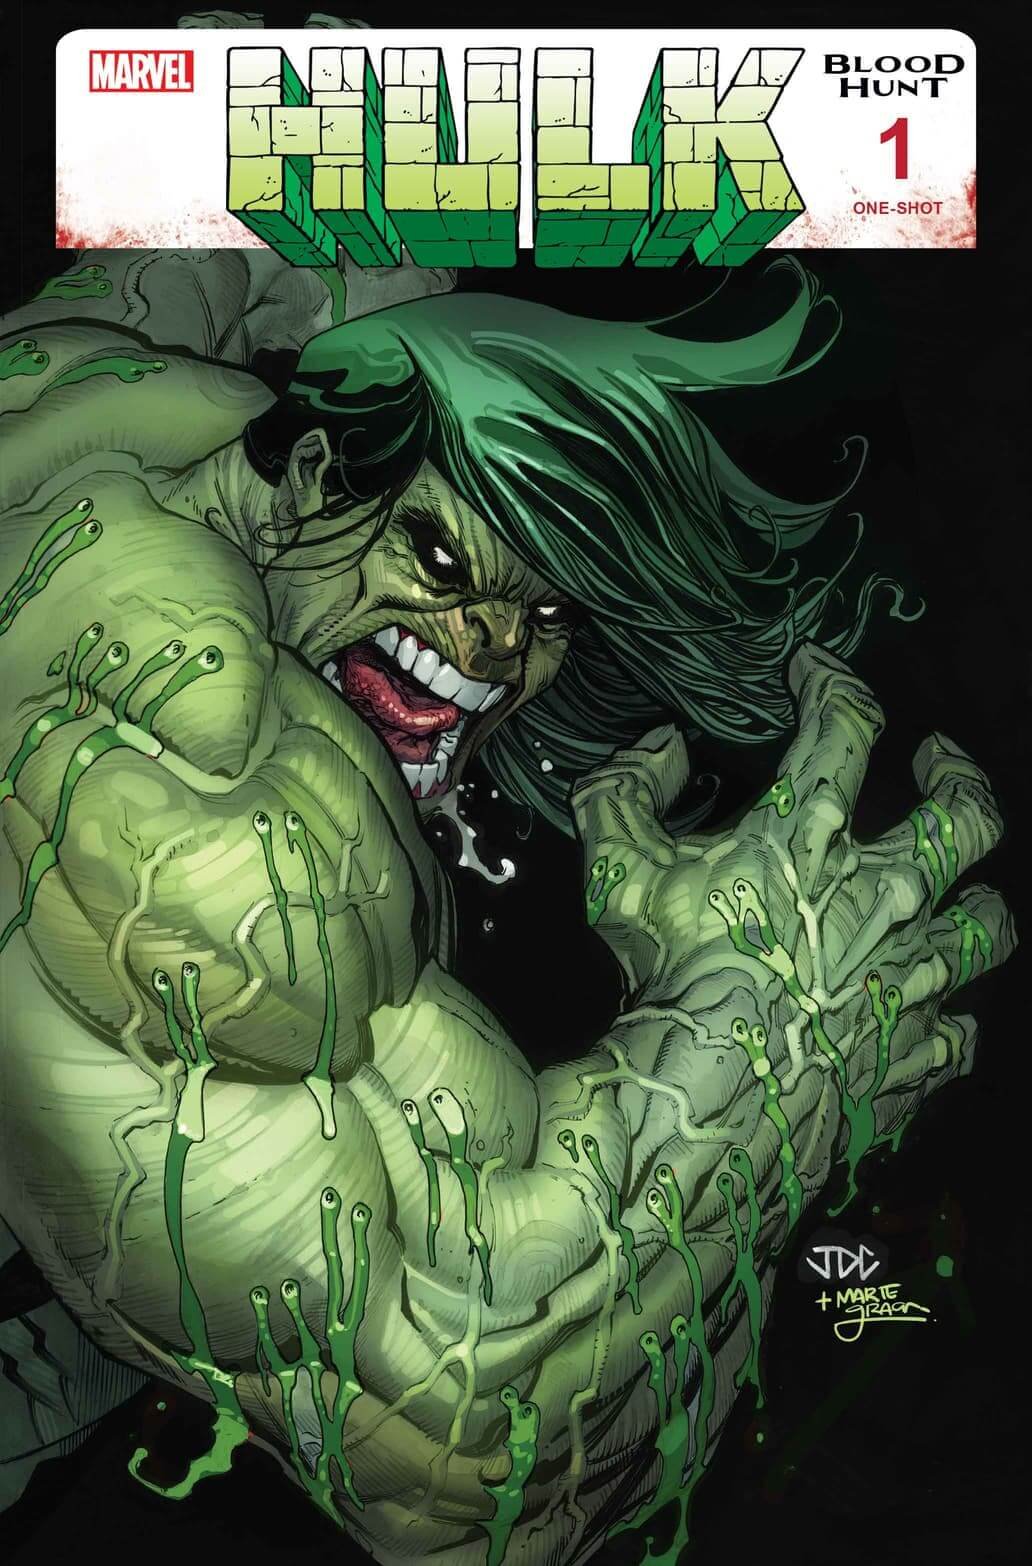 Cover di Hulk: Blood Hunt di Joshua Cassara